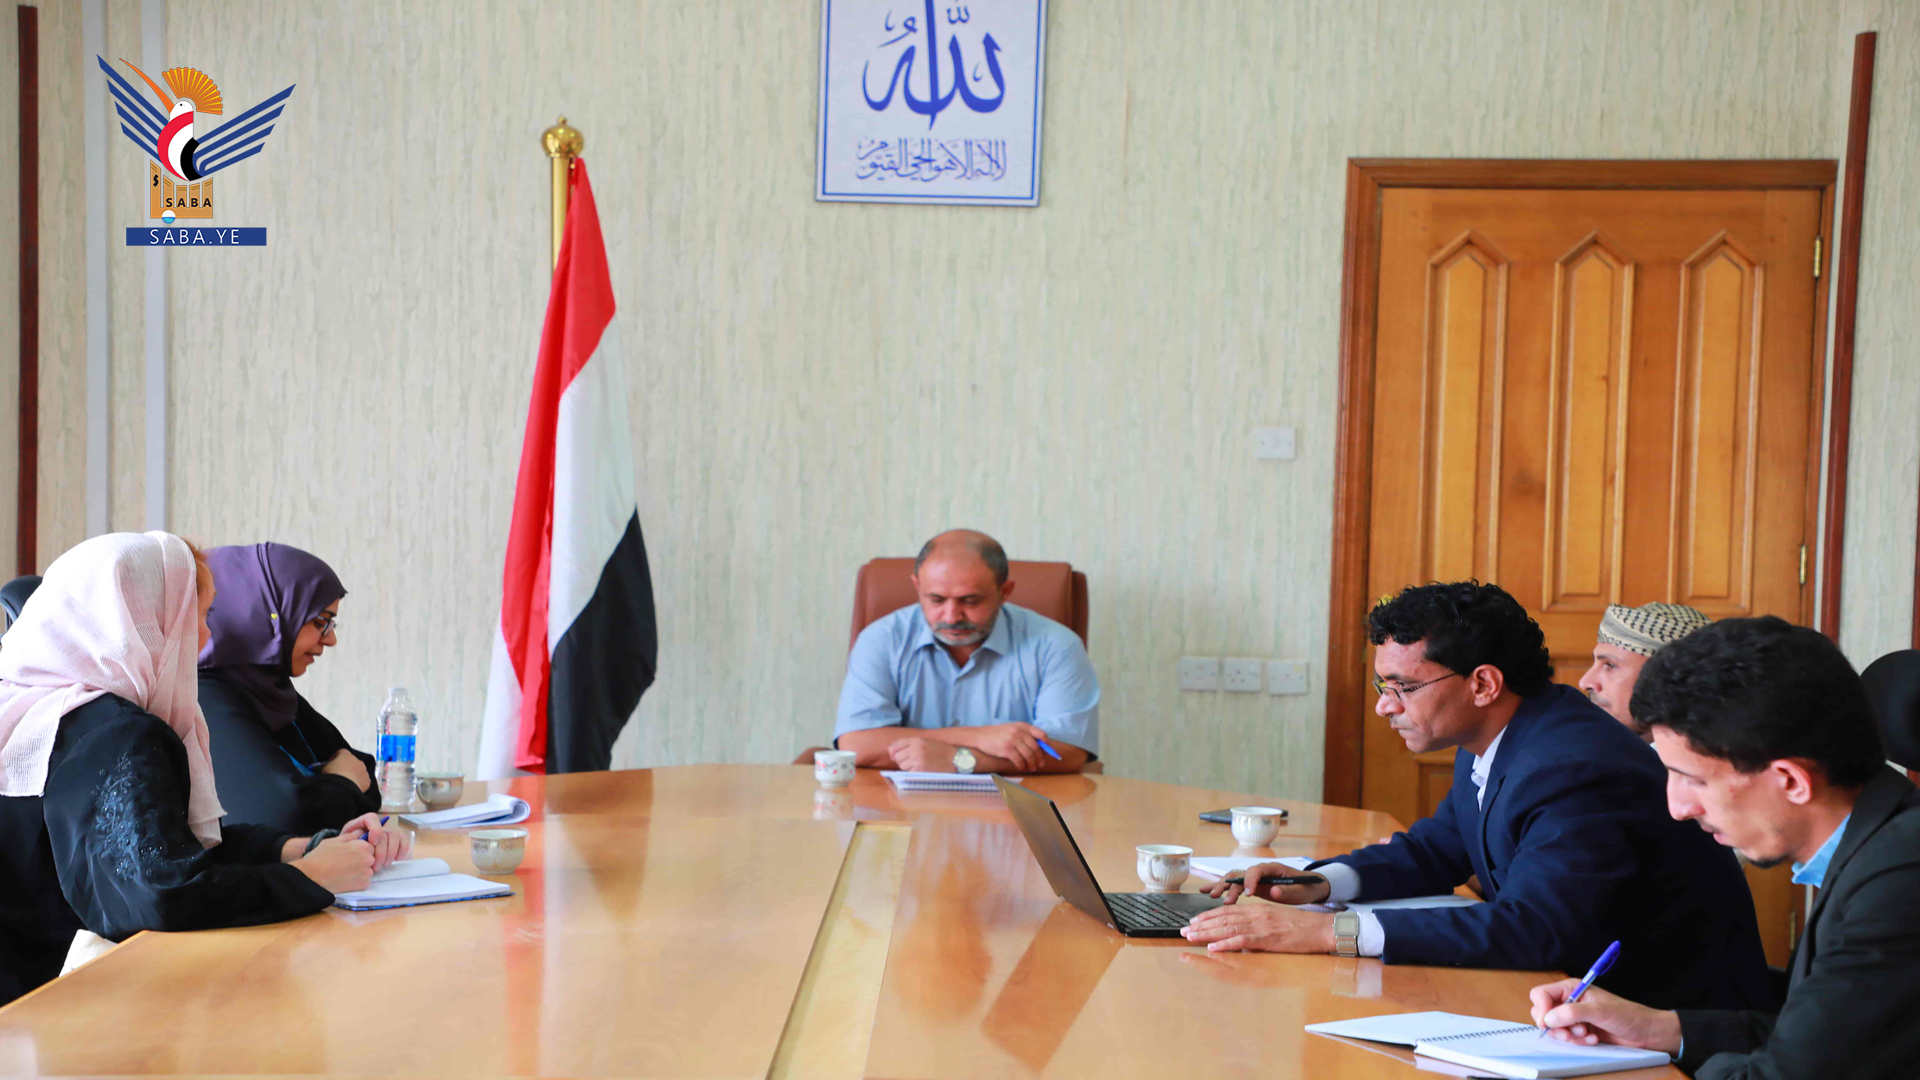   Al-Hamali s'entretient avec le coordinateur humanitaire de la coopération néerlandaise sur les domaines humanitaire et du développement